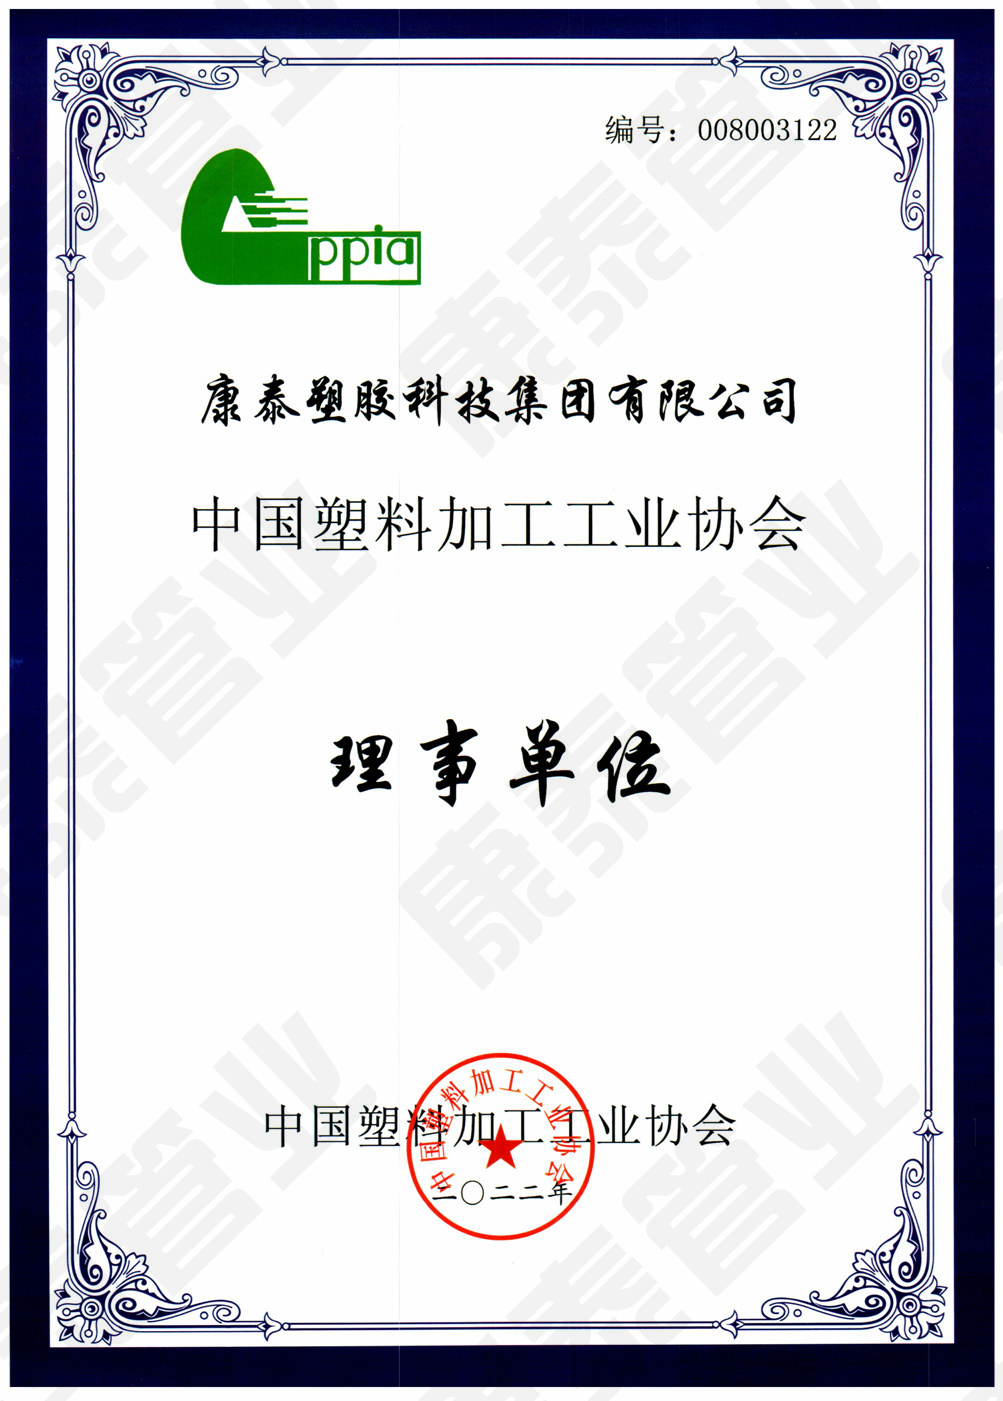 中国塑料加工工业协会理事单位